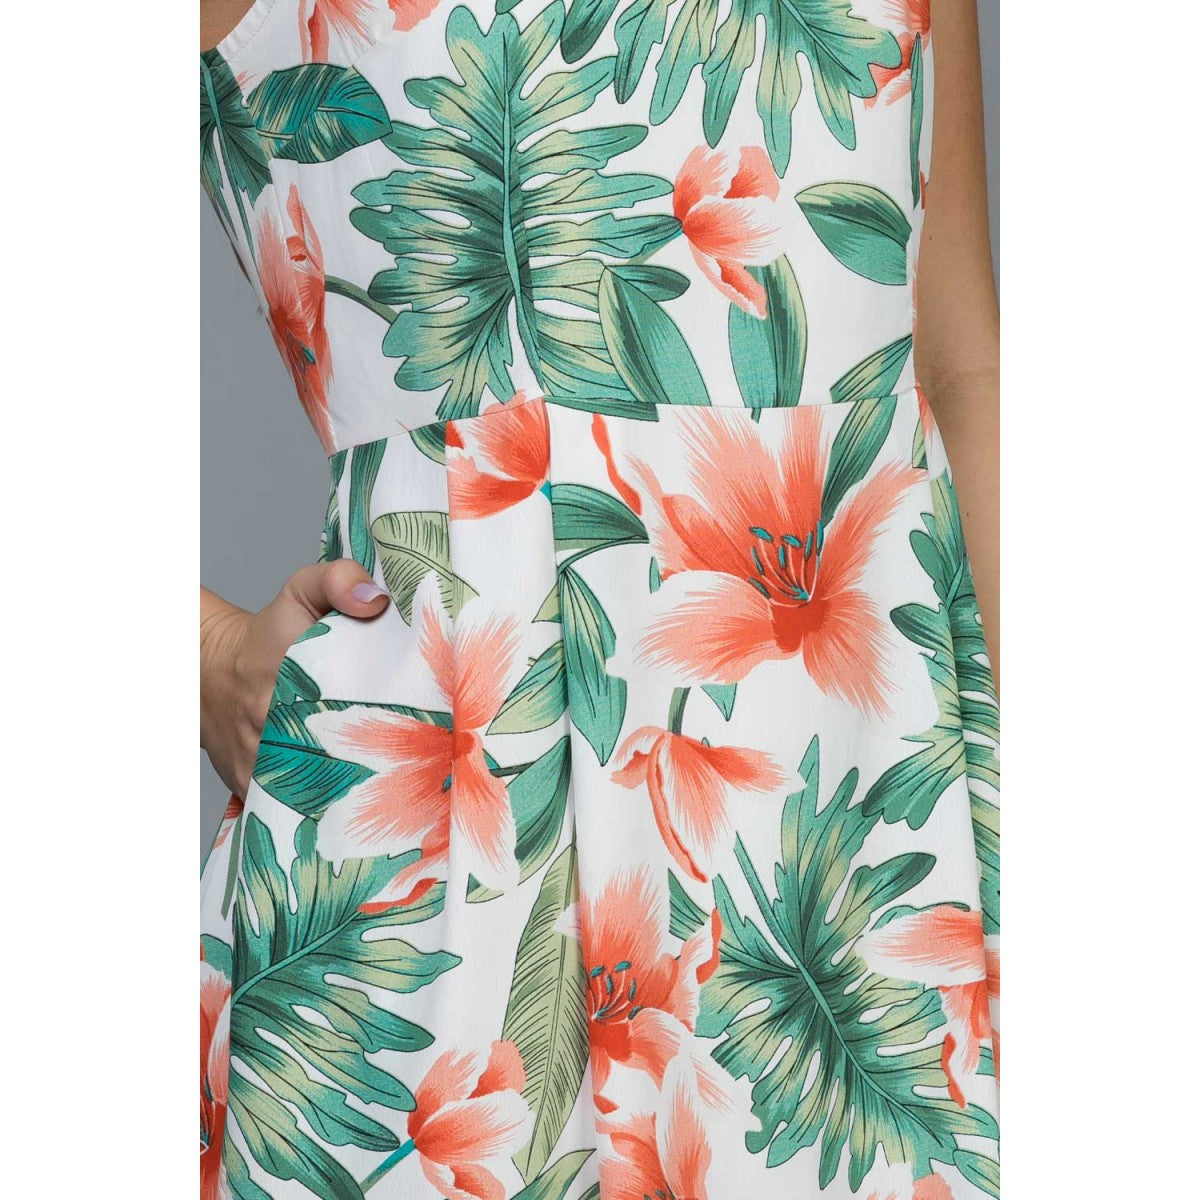 Tropical Print Dress by LA Soul